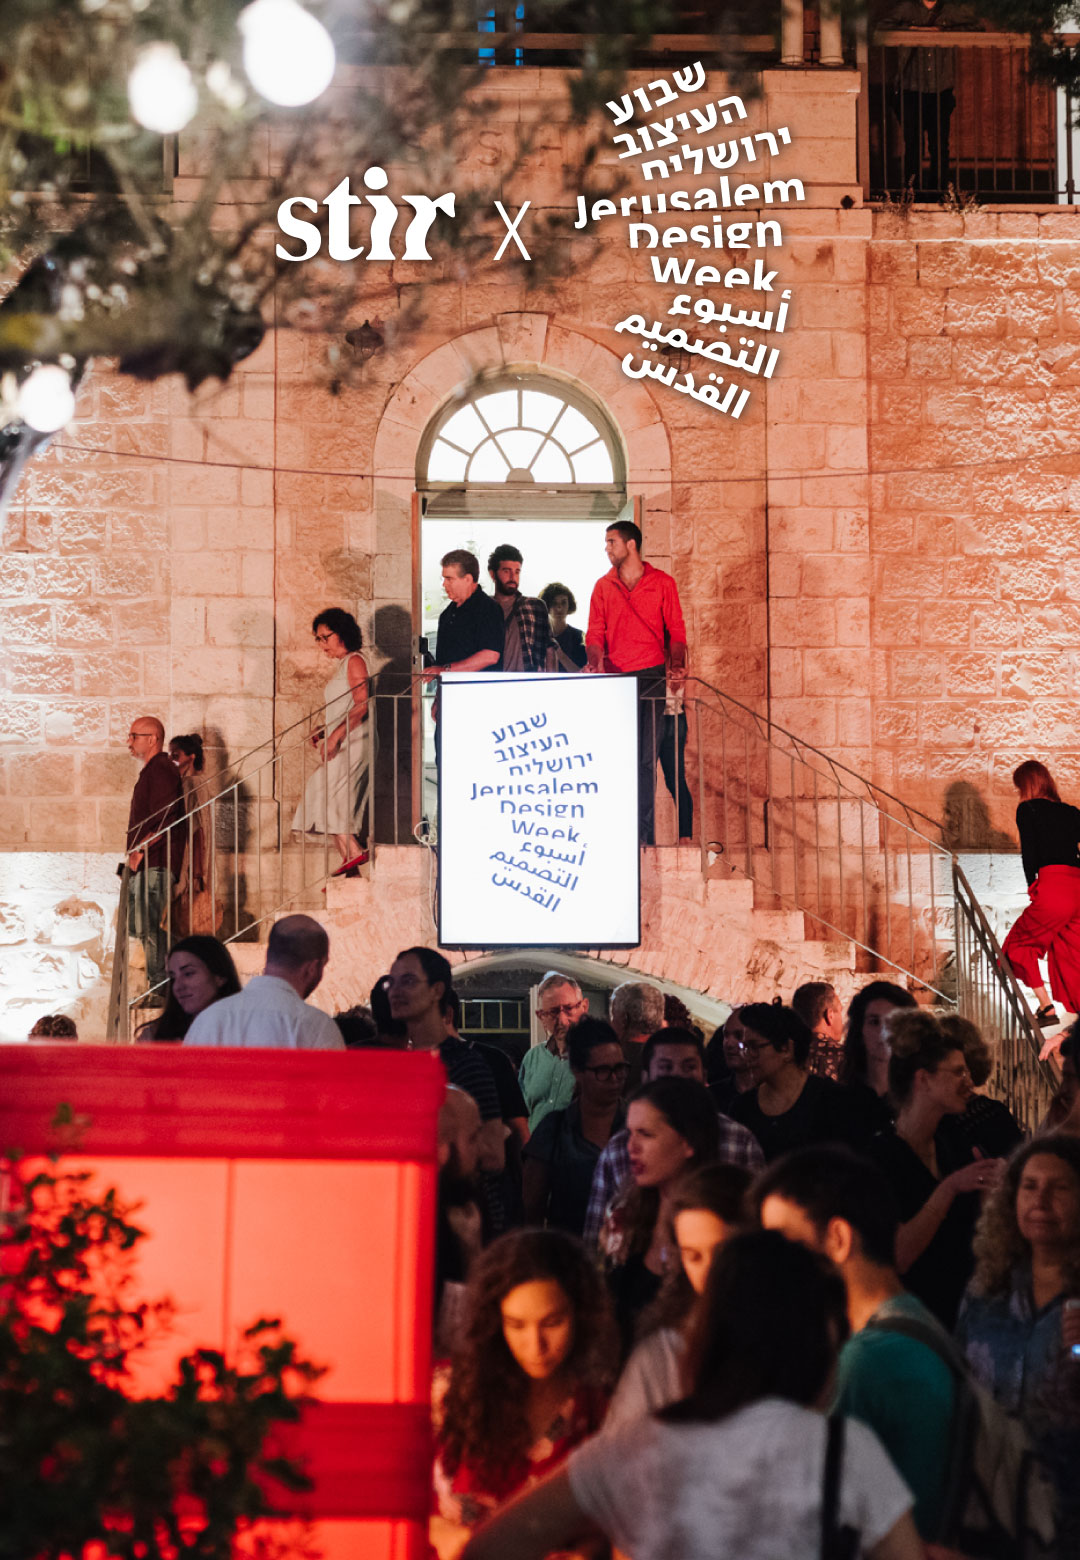 Jerusalem Design Week explores the synergy of design and ephemerality